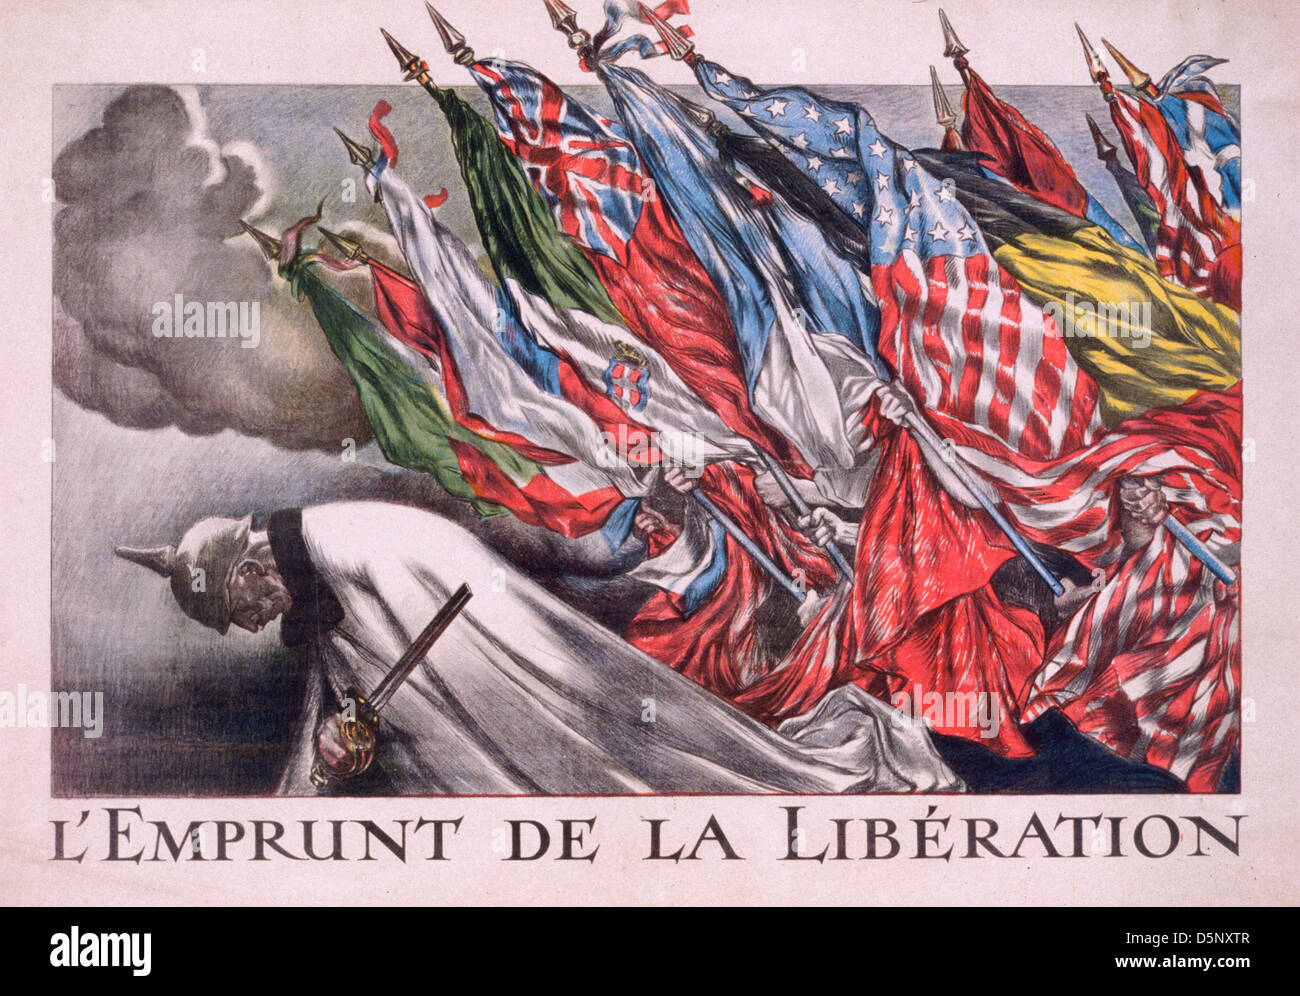 L'emprunt de la libération - Le prêt de la libération des drapeaux des alliés sur l'empereur Guillaume II (1859-1941). La Première Guerre mondiale, l'affiche Française vers 1918 Banque D'Images